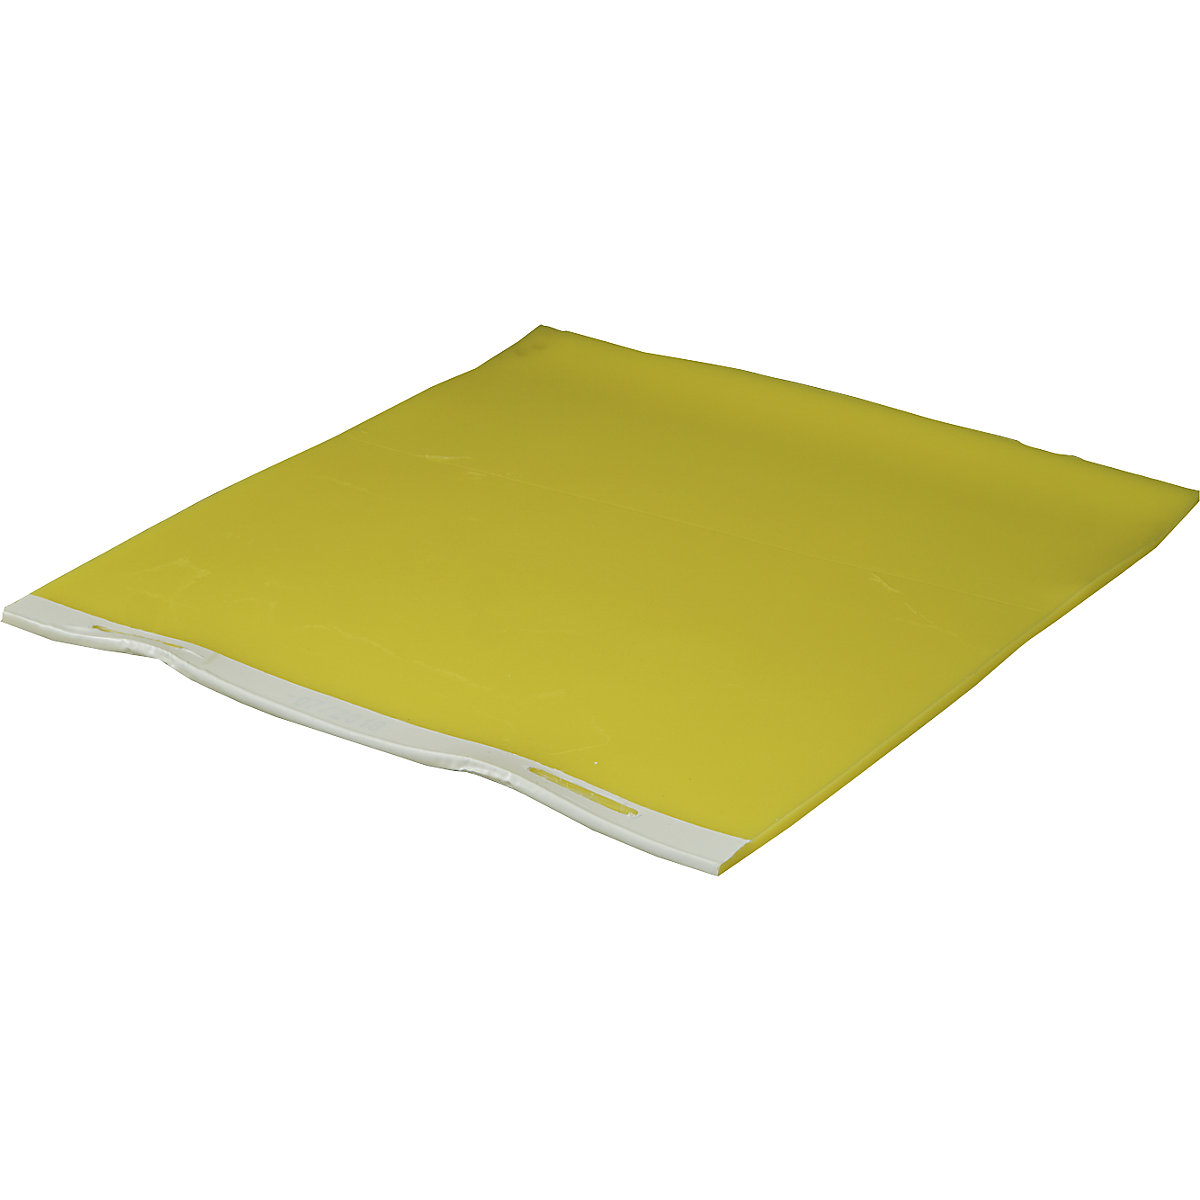 Sealing mat, mat thickness 8 mm